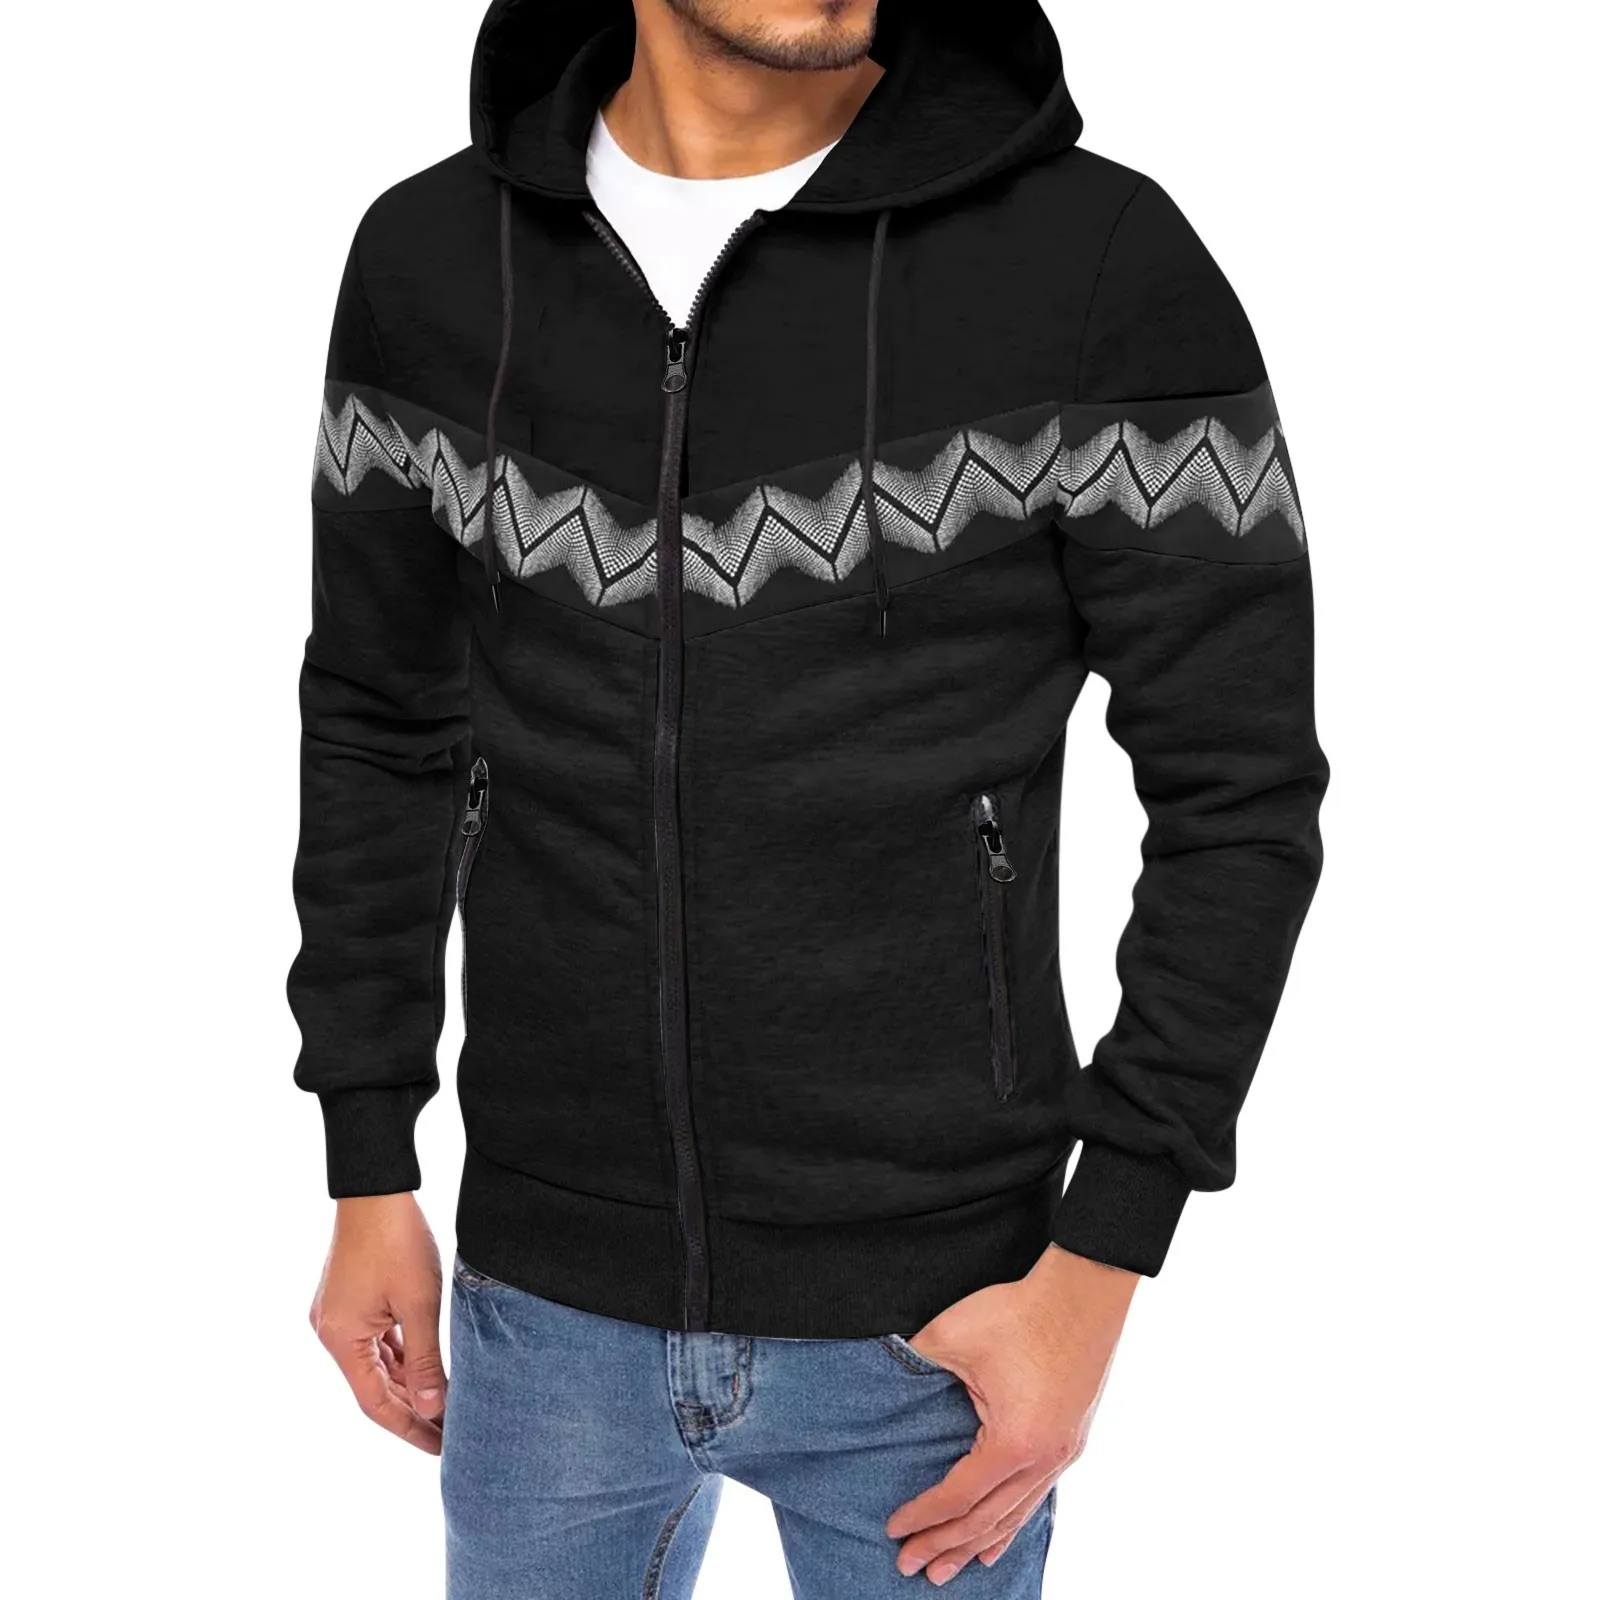 

Men Hoodie Warm Soft Jacket Coat Curve Print Long Sleeve Zipper Fleece Sweatshirt Hooded Jacket Sweater Tracksuit Sportswear